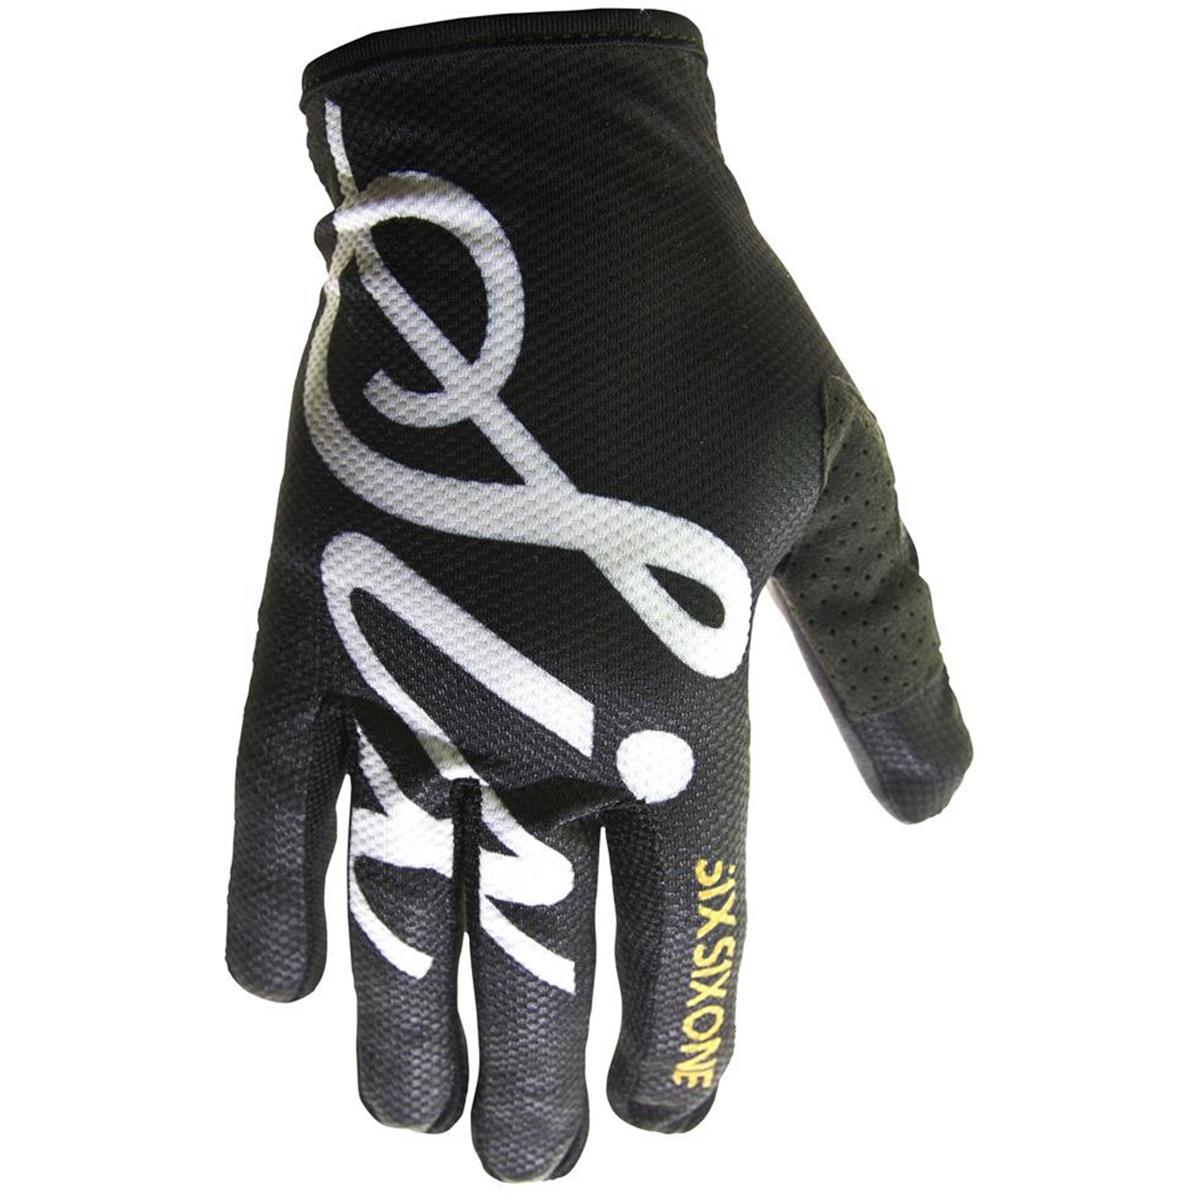 SixSixOne Bike Gloves Comp Black Script